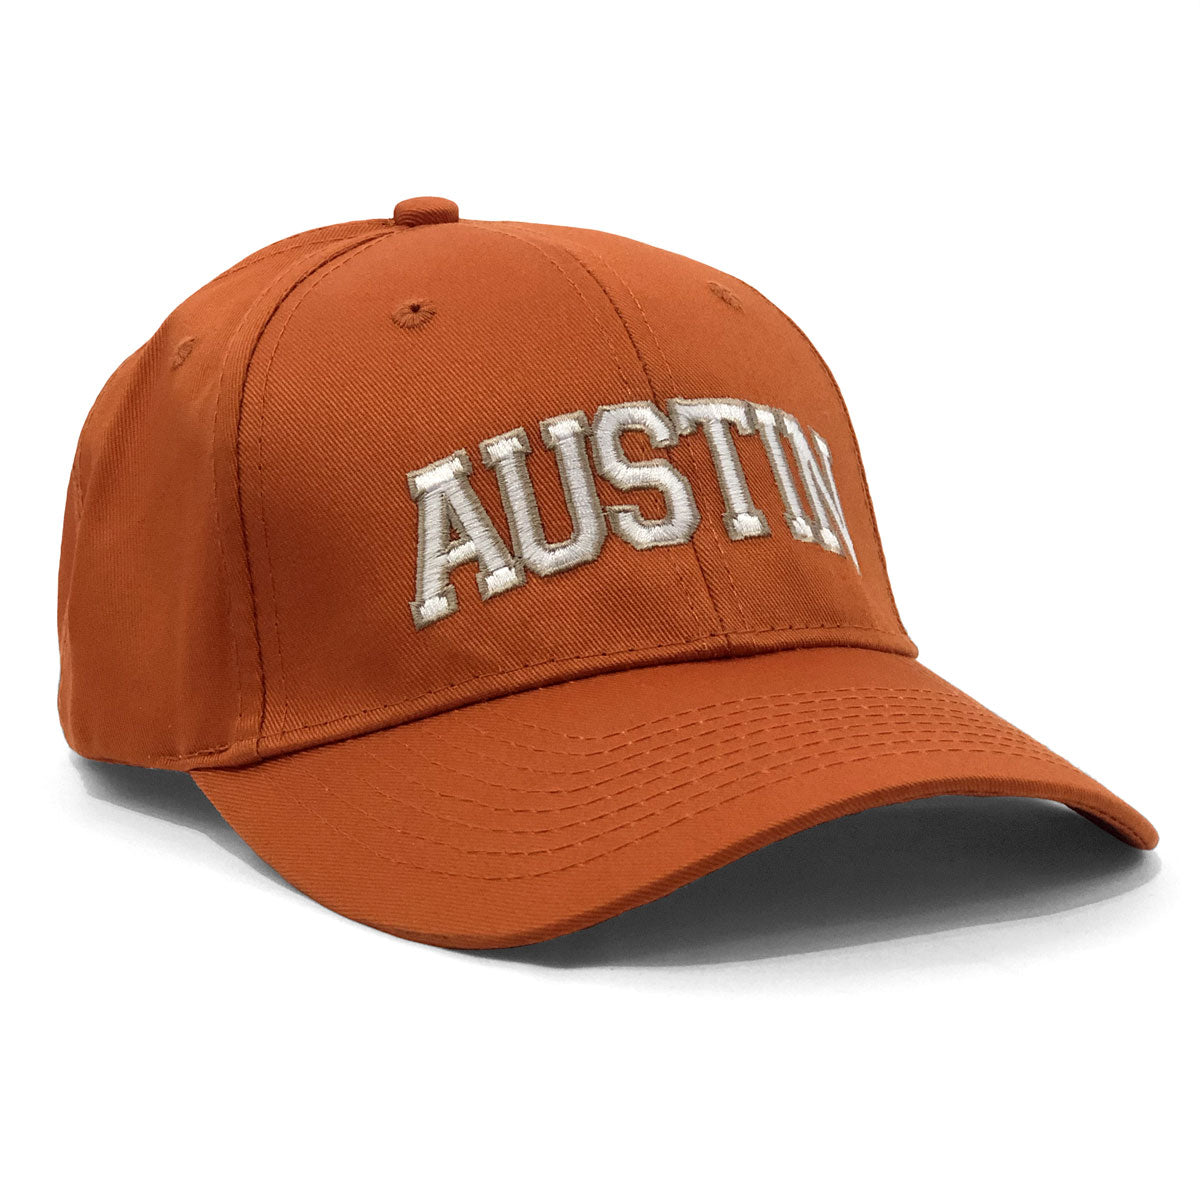 Austin Arched Cap